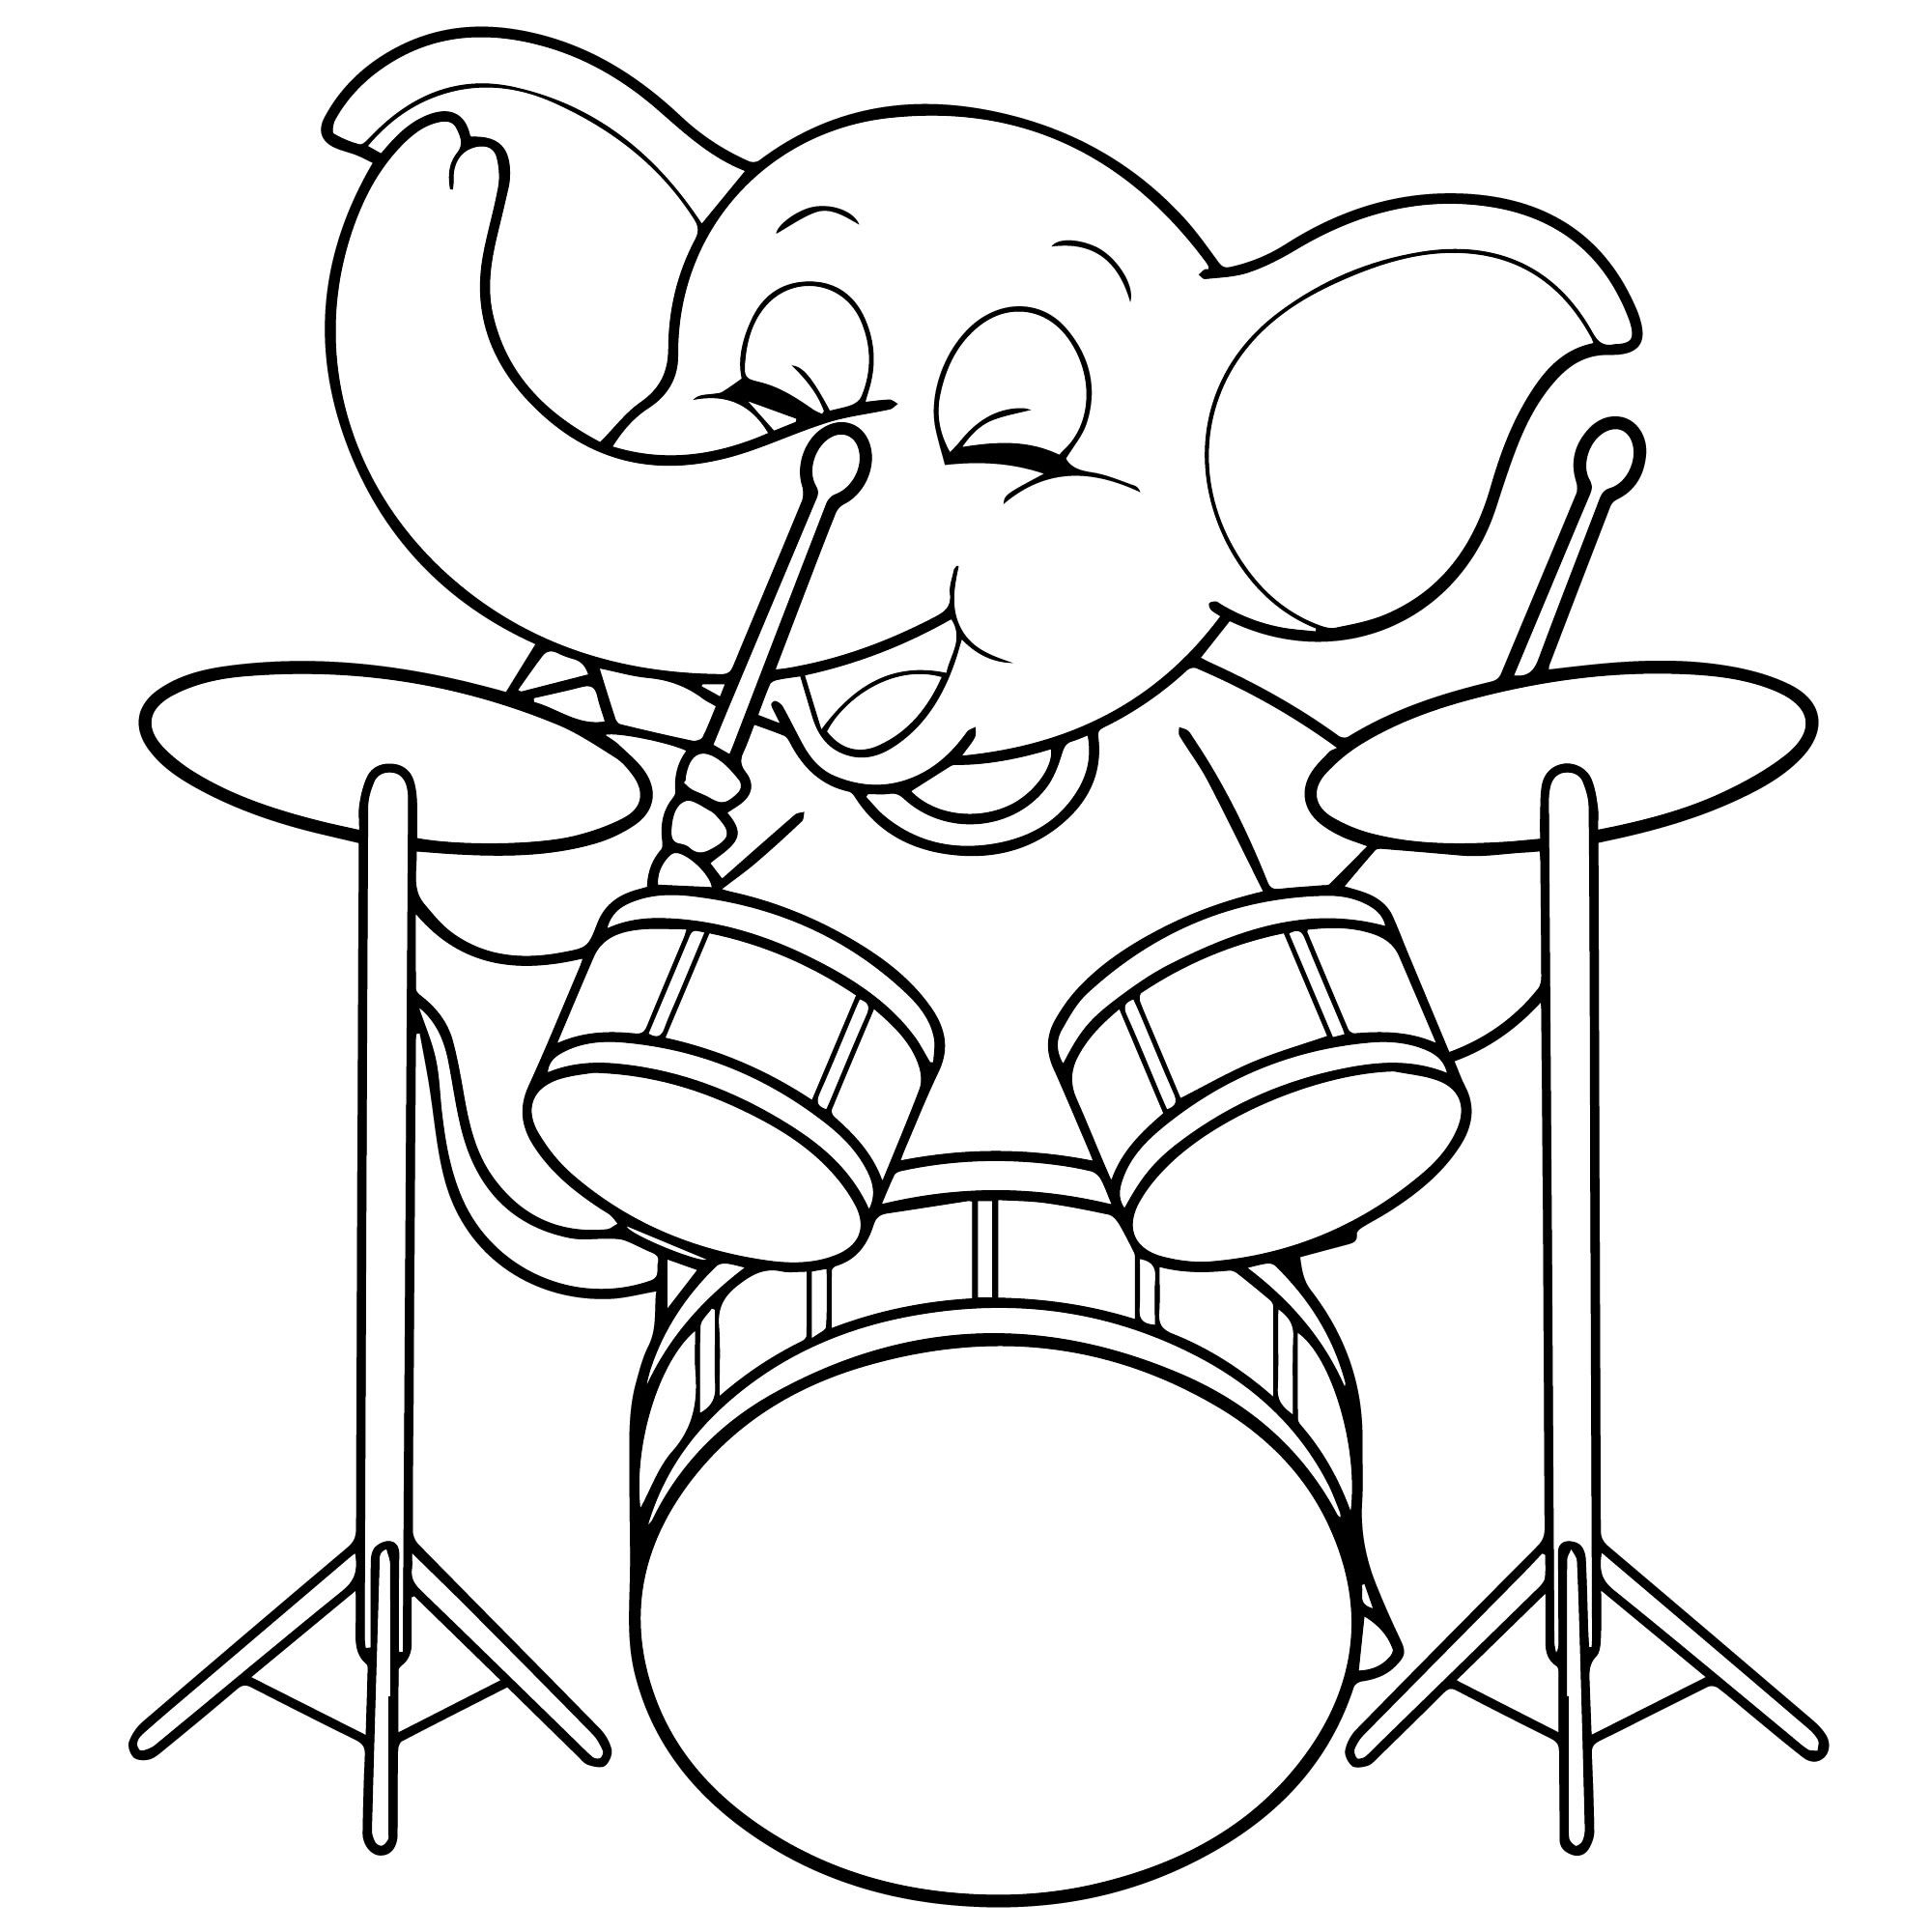 Слон барабанщик раскраска для детей